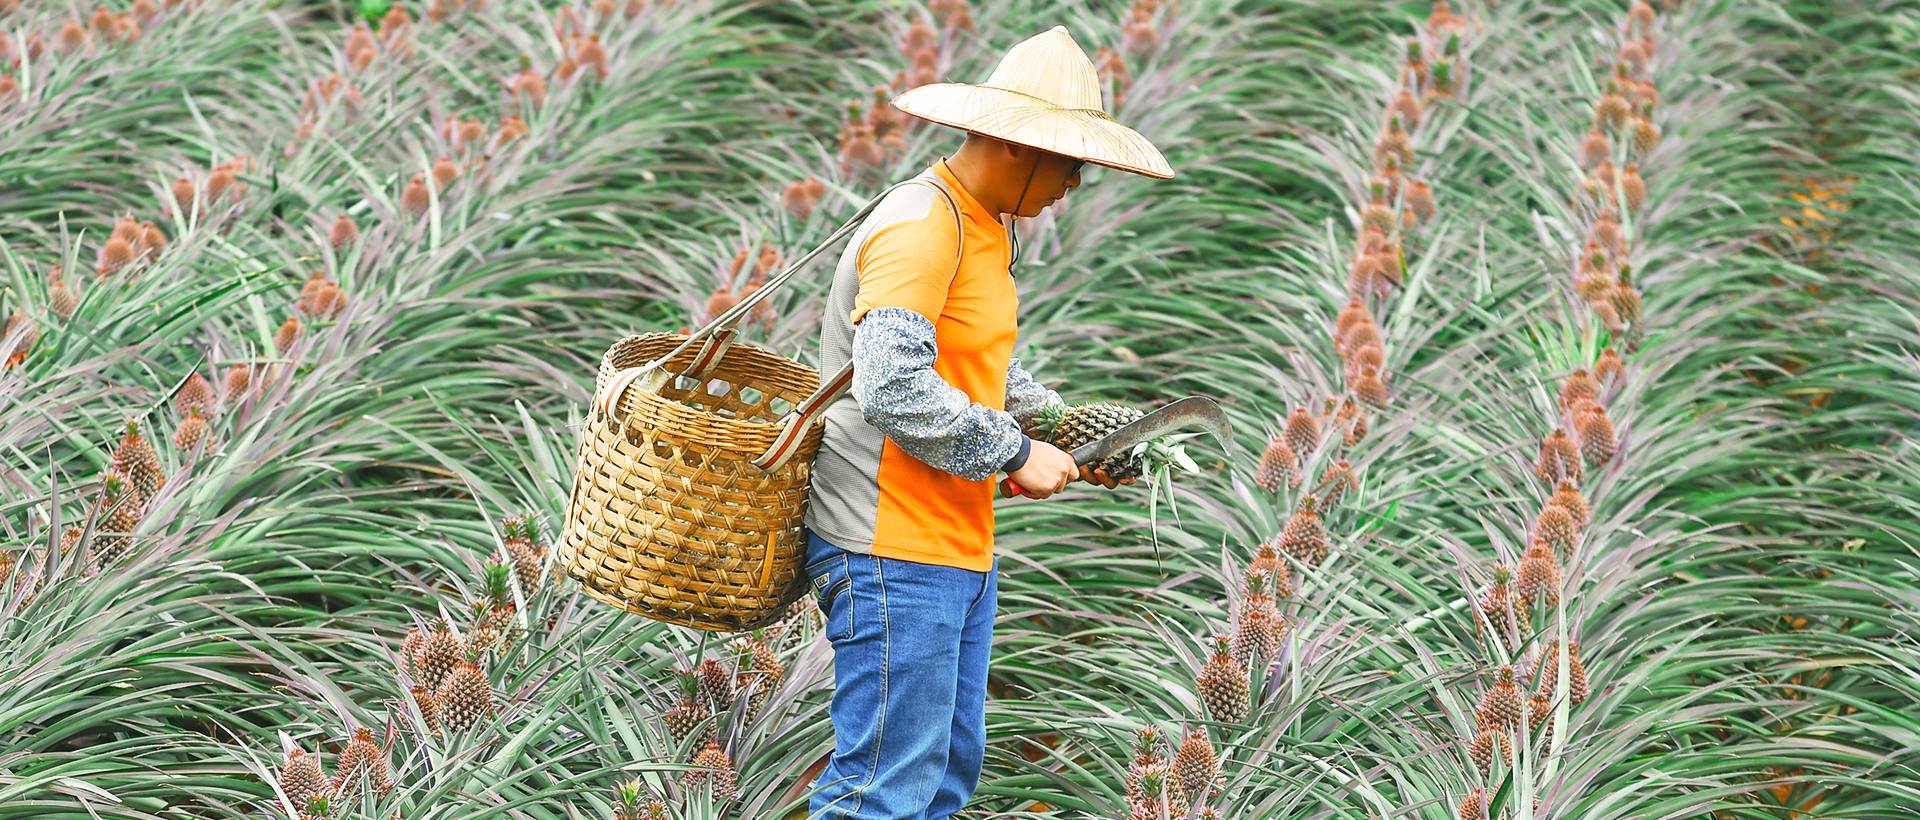 pineapple farmer harvesting pineapple